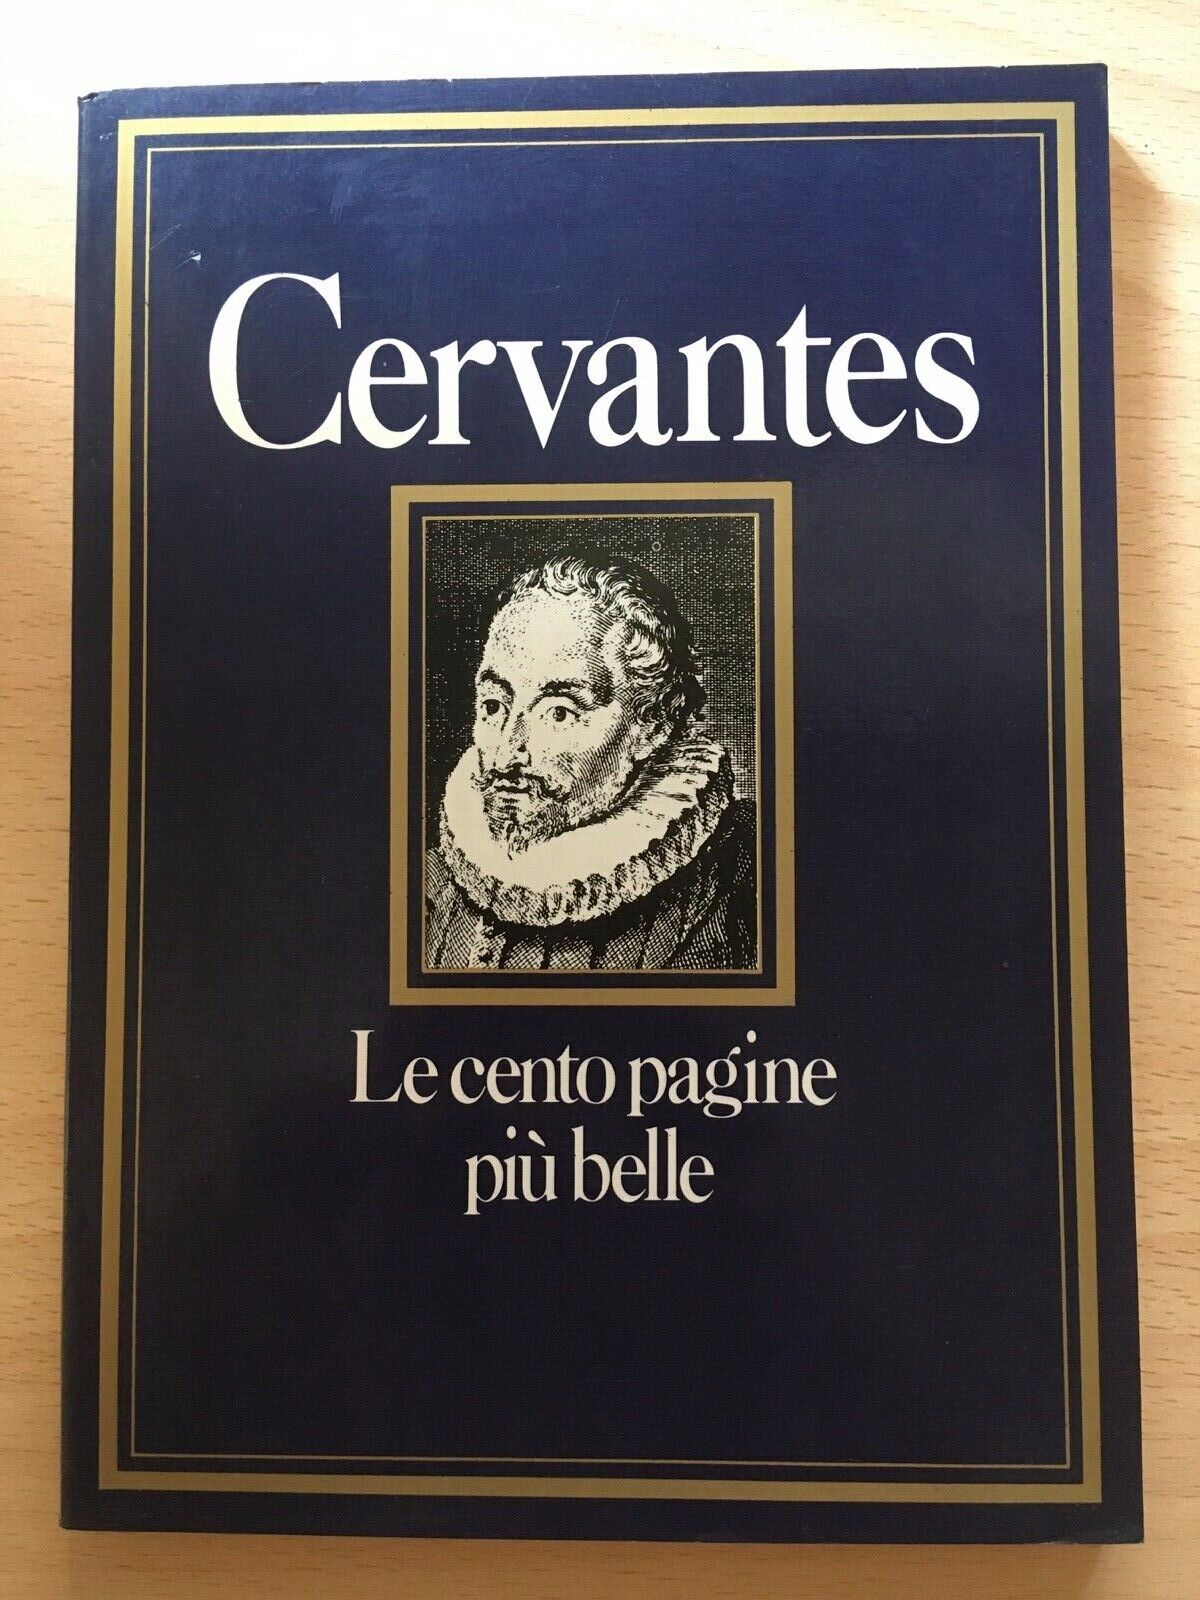  Cervantes - Le cento pagine pi? belle - Giuseppe Di Stefano, 1982,  Cde - V